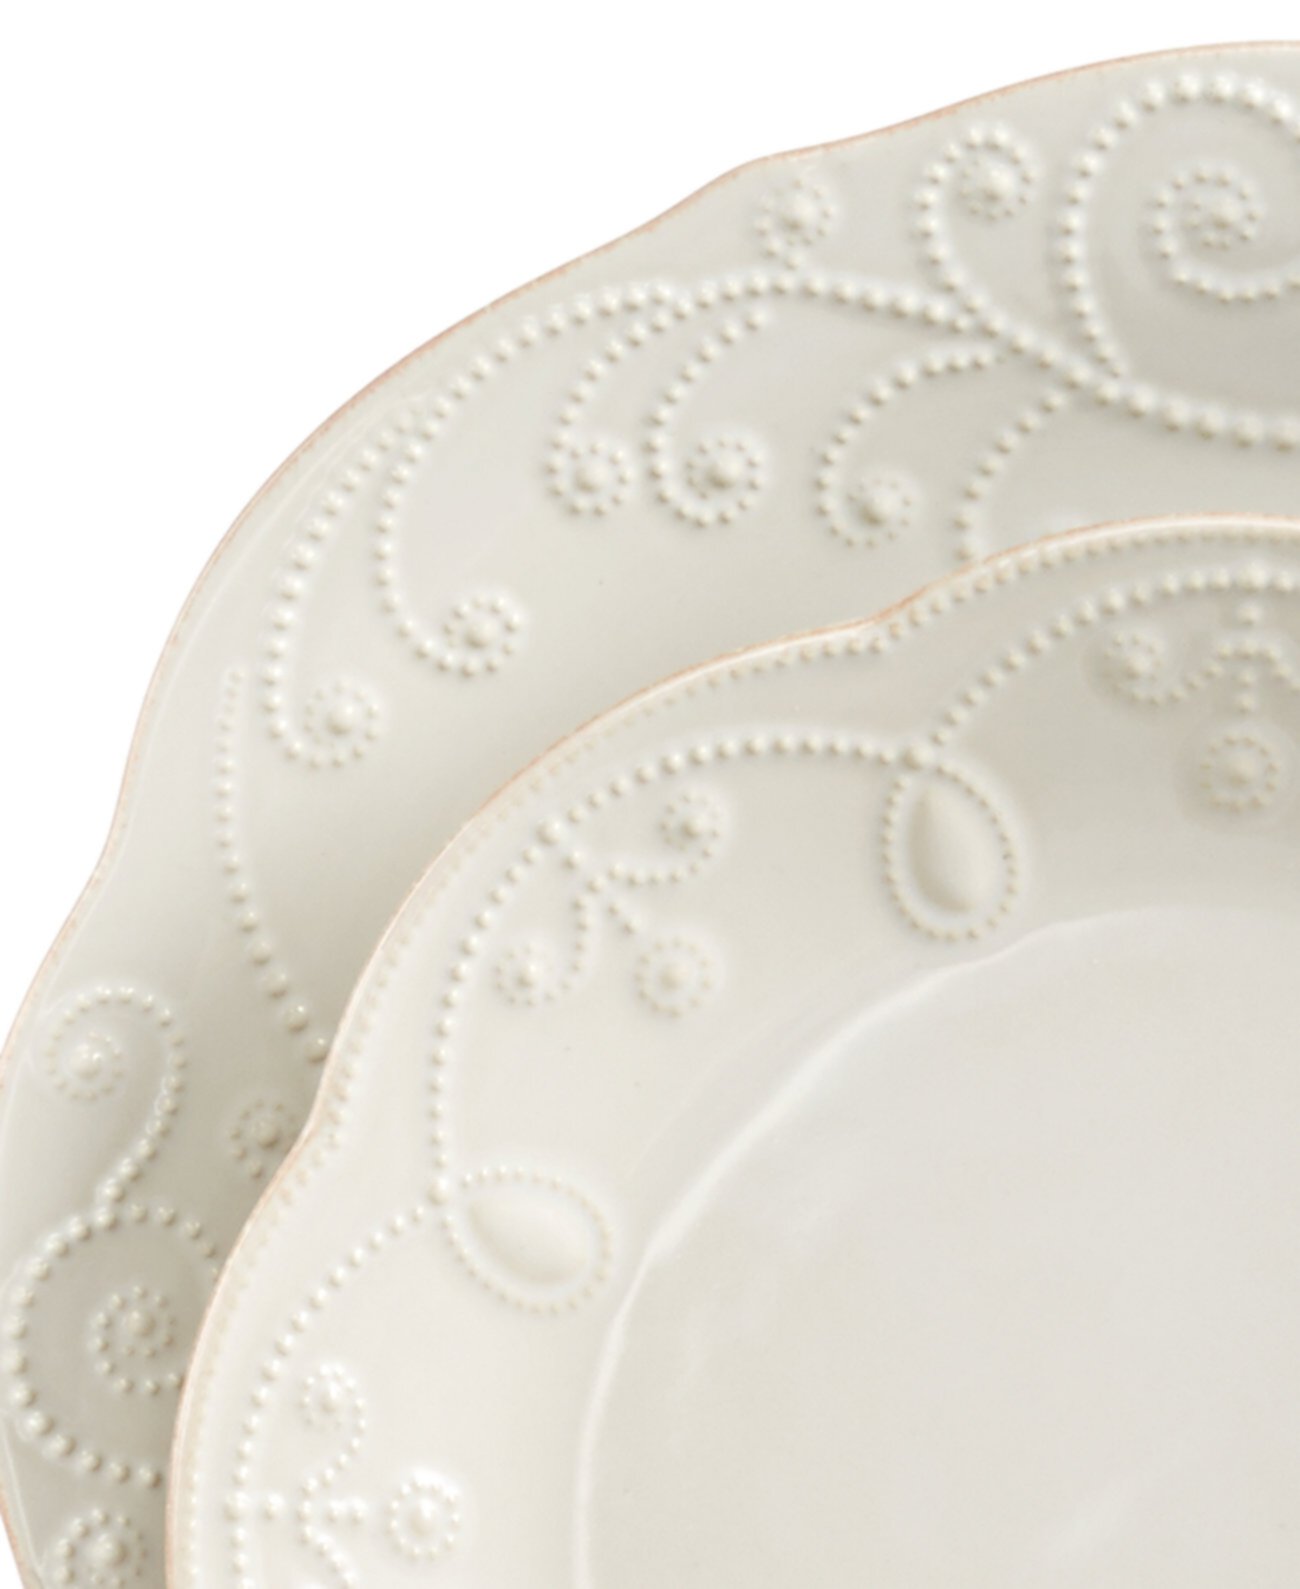 Французский набор столовой посуды Perle White из 12 предметов, сервиз для 4 человек, создан для Macy's Lenox